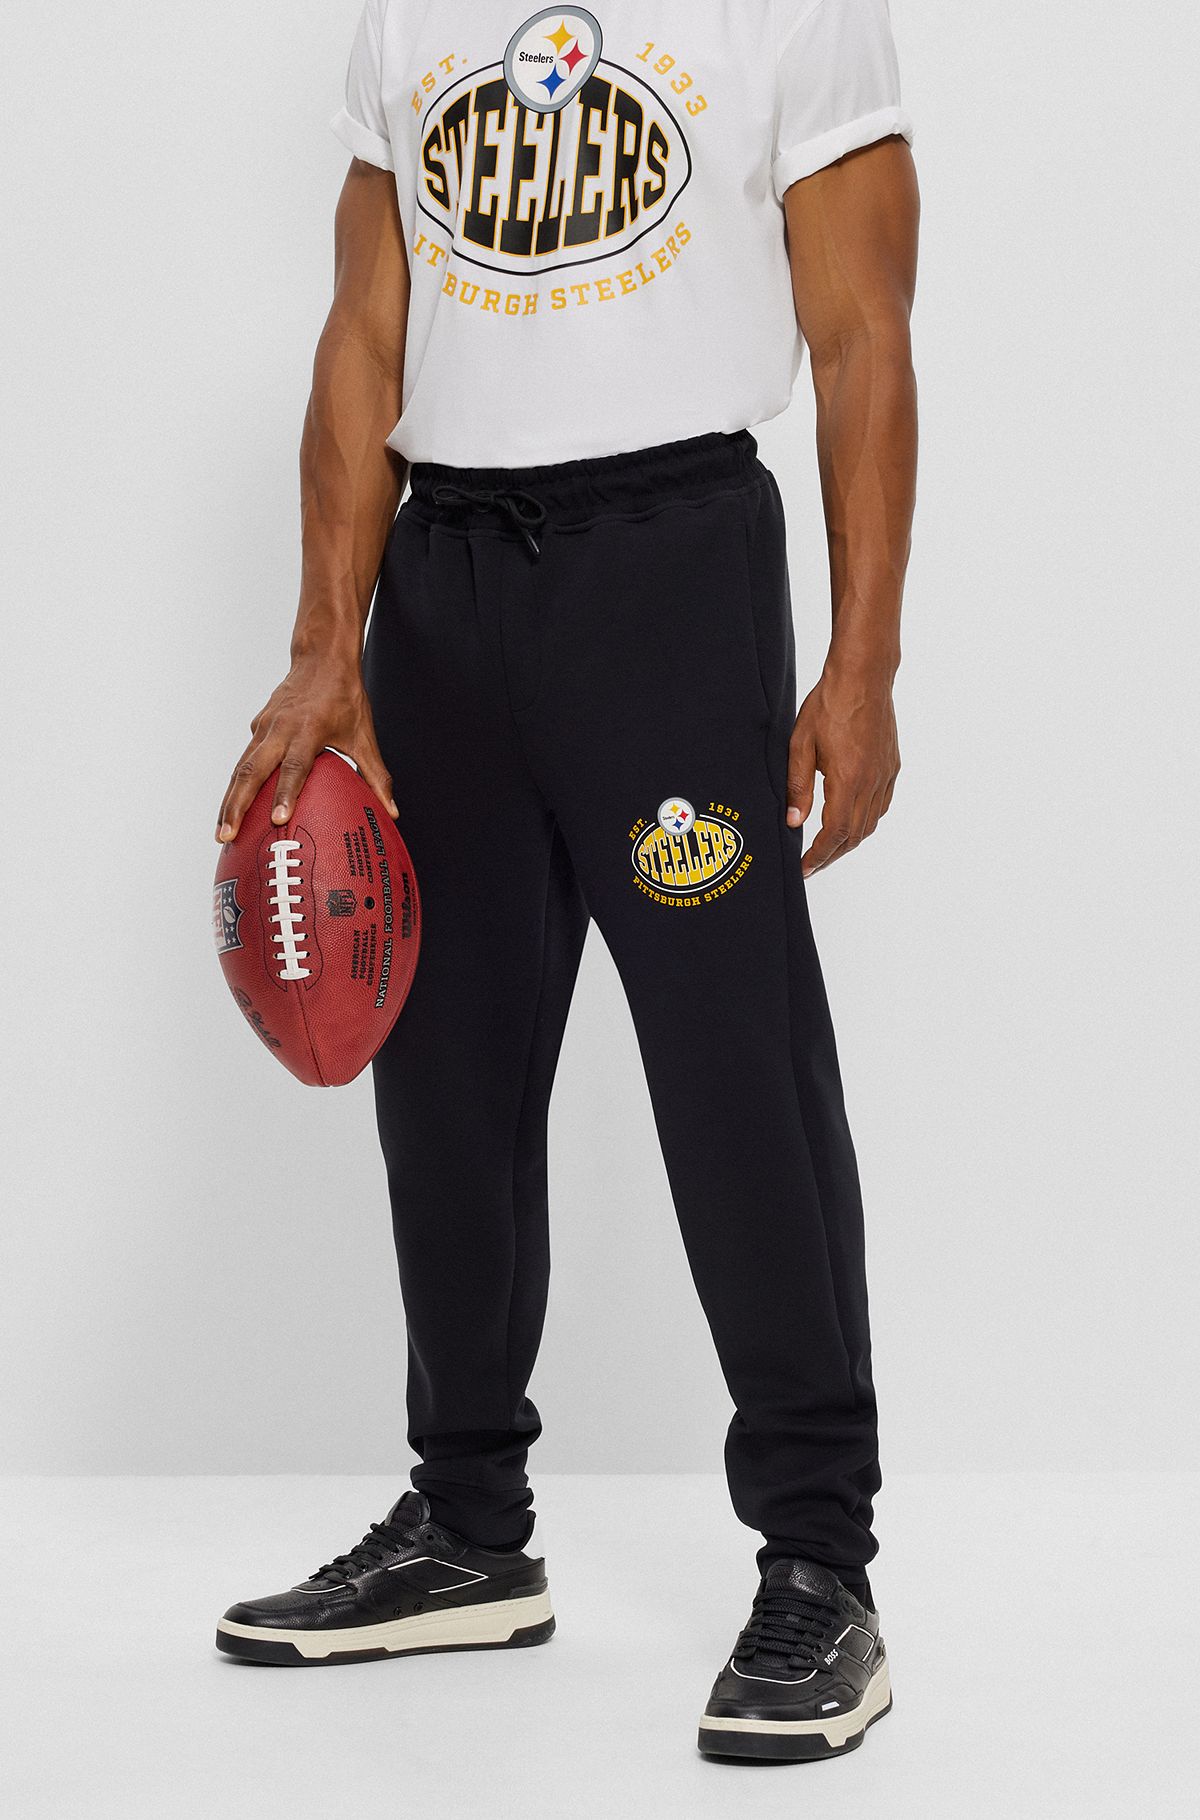 Bas de survêtement BOSS x NFL en coton mélangé avec logo du partenariat, Steelers